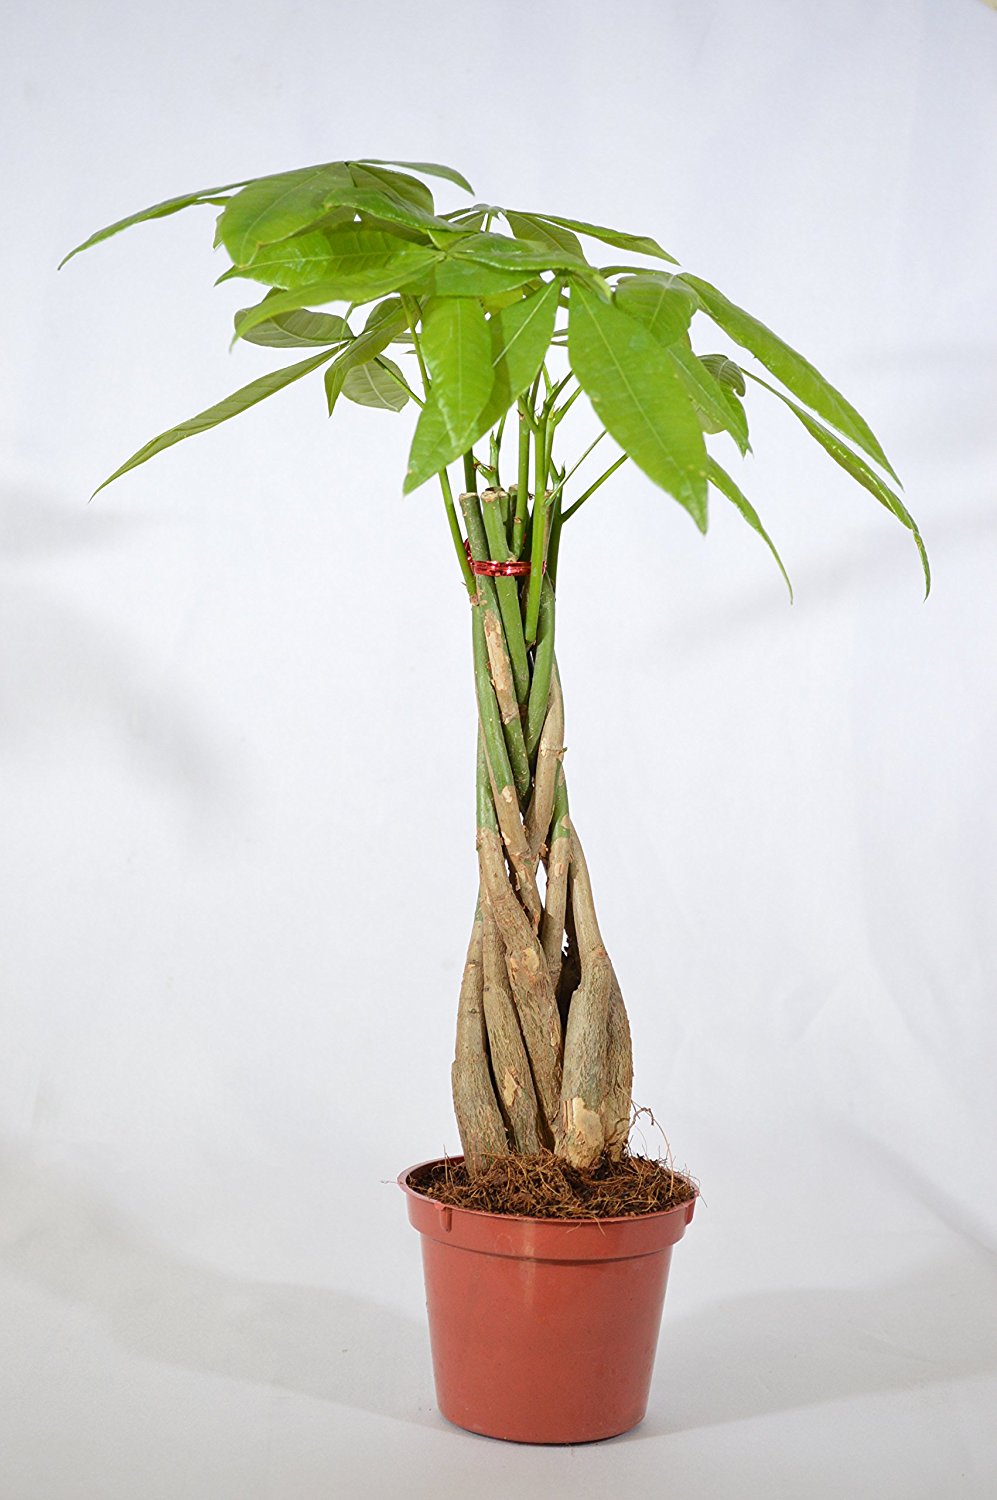 9GreenBox - Rare Mini Pachira Five Braided Tree Bring Luck Pachira Houseplant Bonsai - 9GreenBox